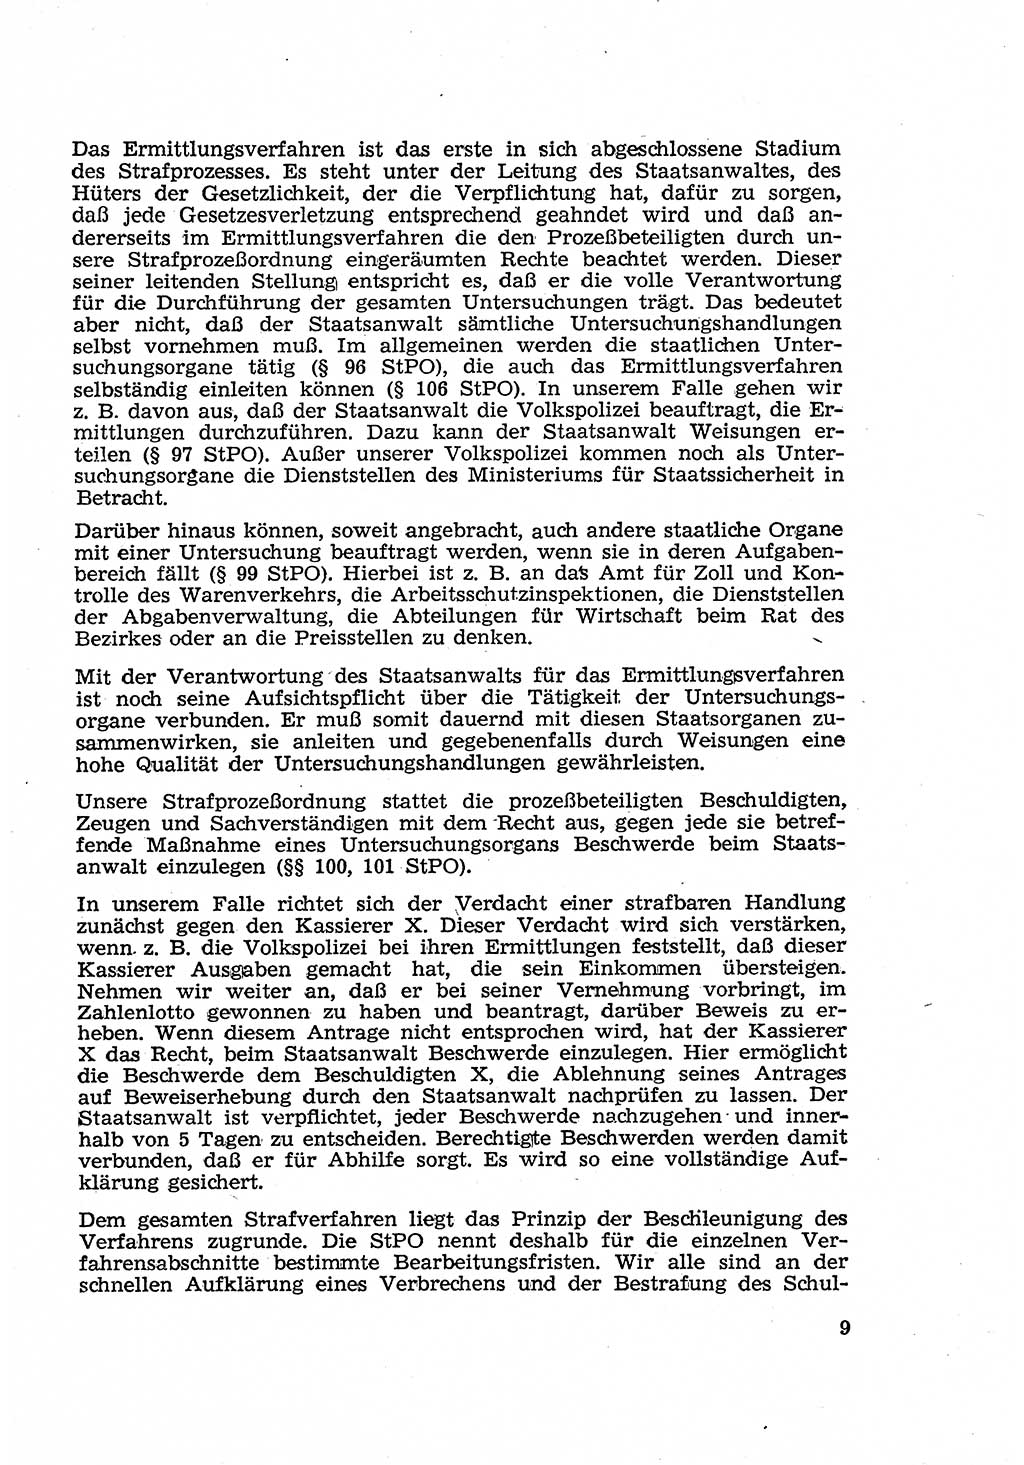 Strafverfahren in der Deutschen Demokratischen Republik (DDR) und seine demokratischen Prinzipien 1956, Seite 9 (Str.-Verf. DDR 1956, S. 9)